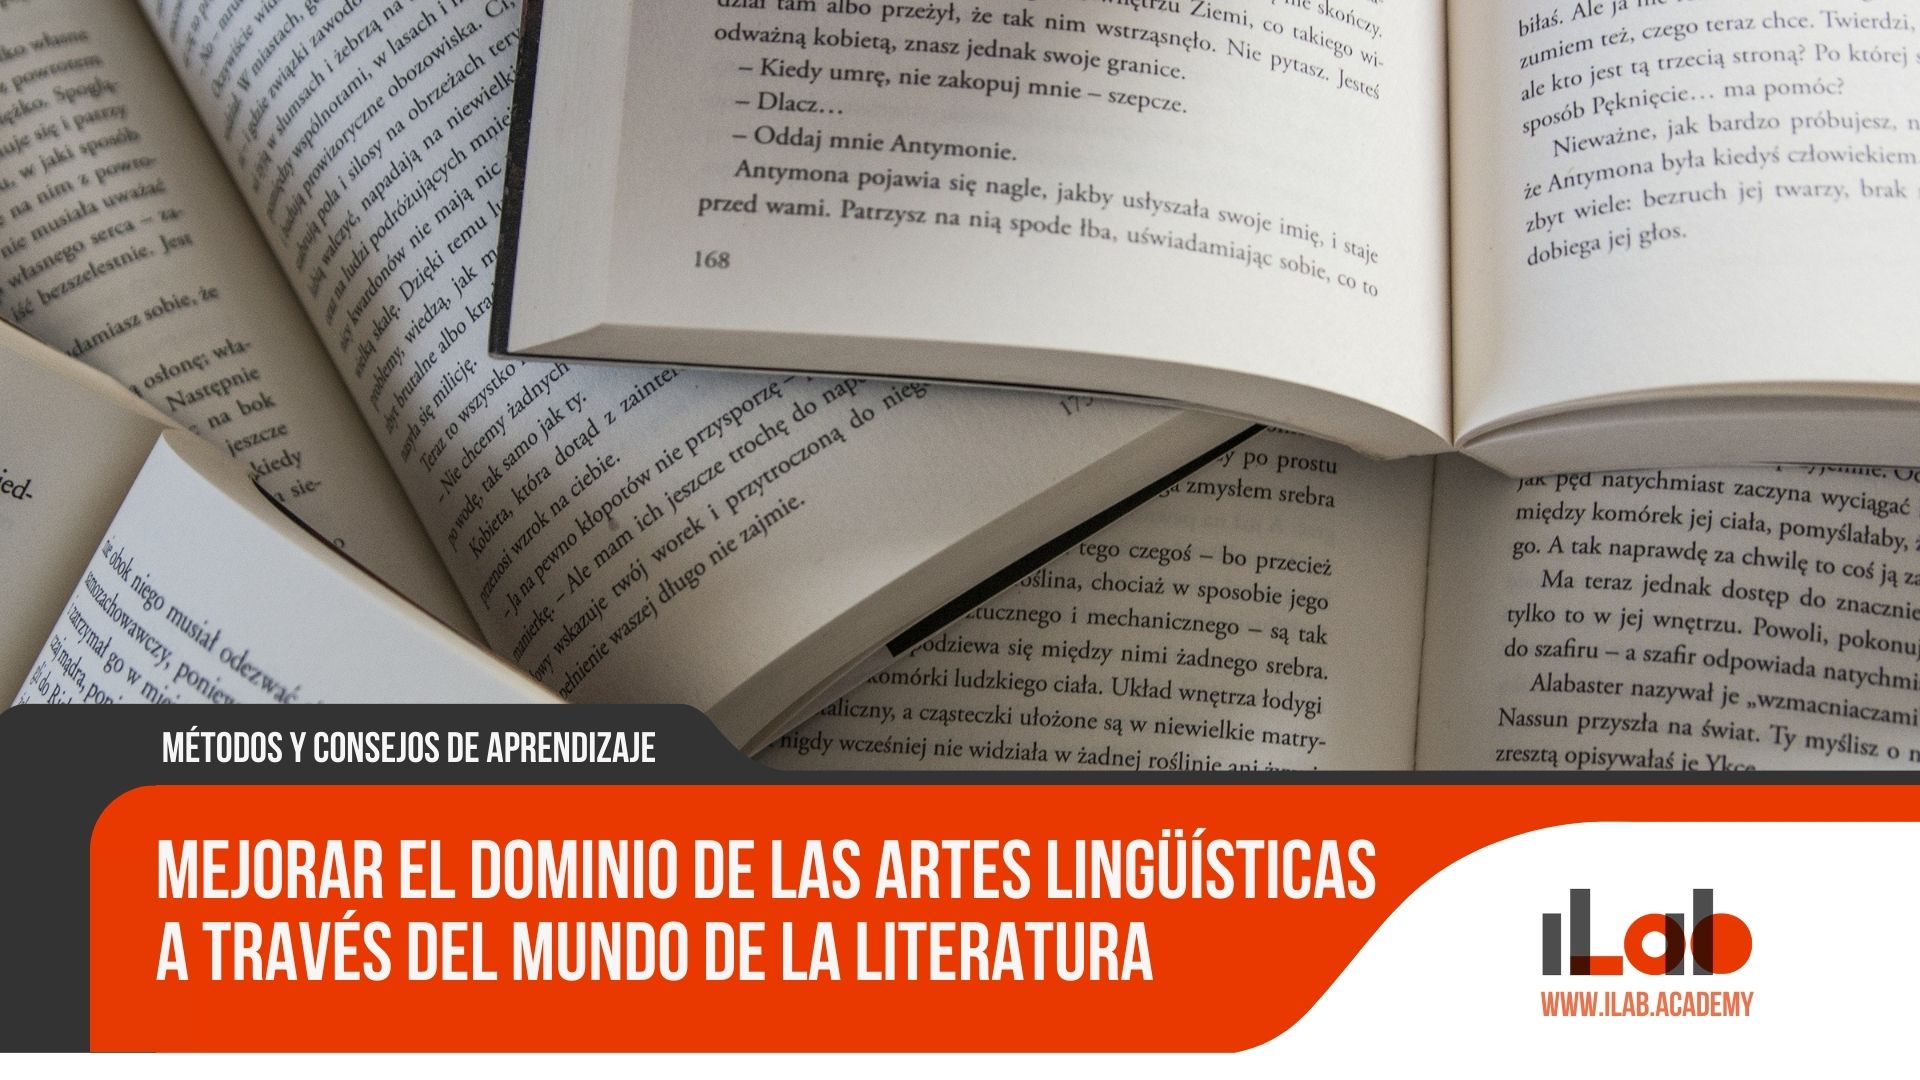 Mejorar el dominio de las artes lingüísticas a través del mundo de la literatura